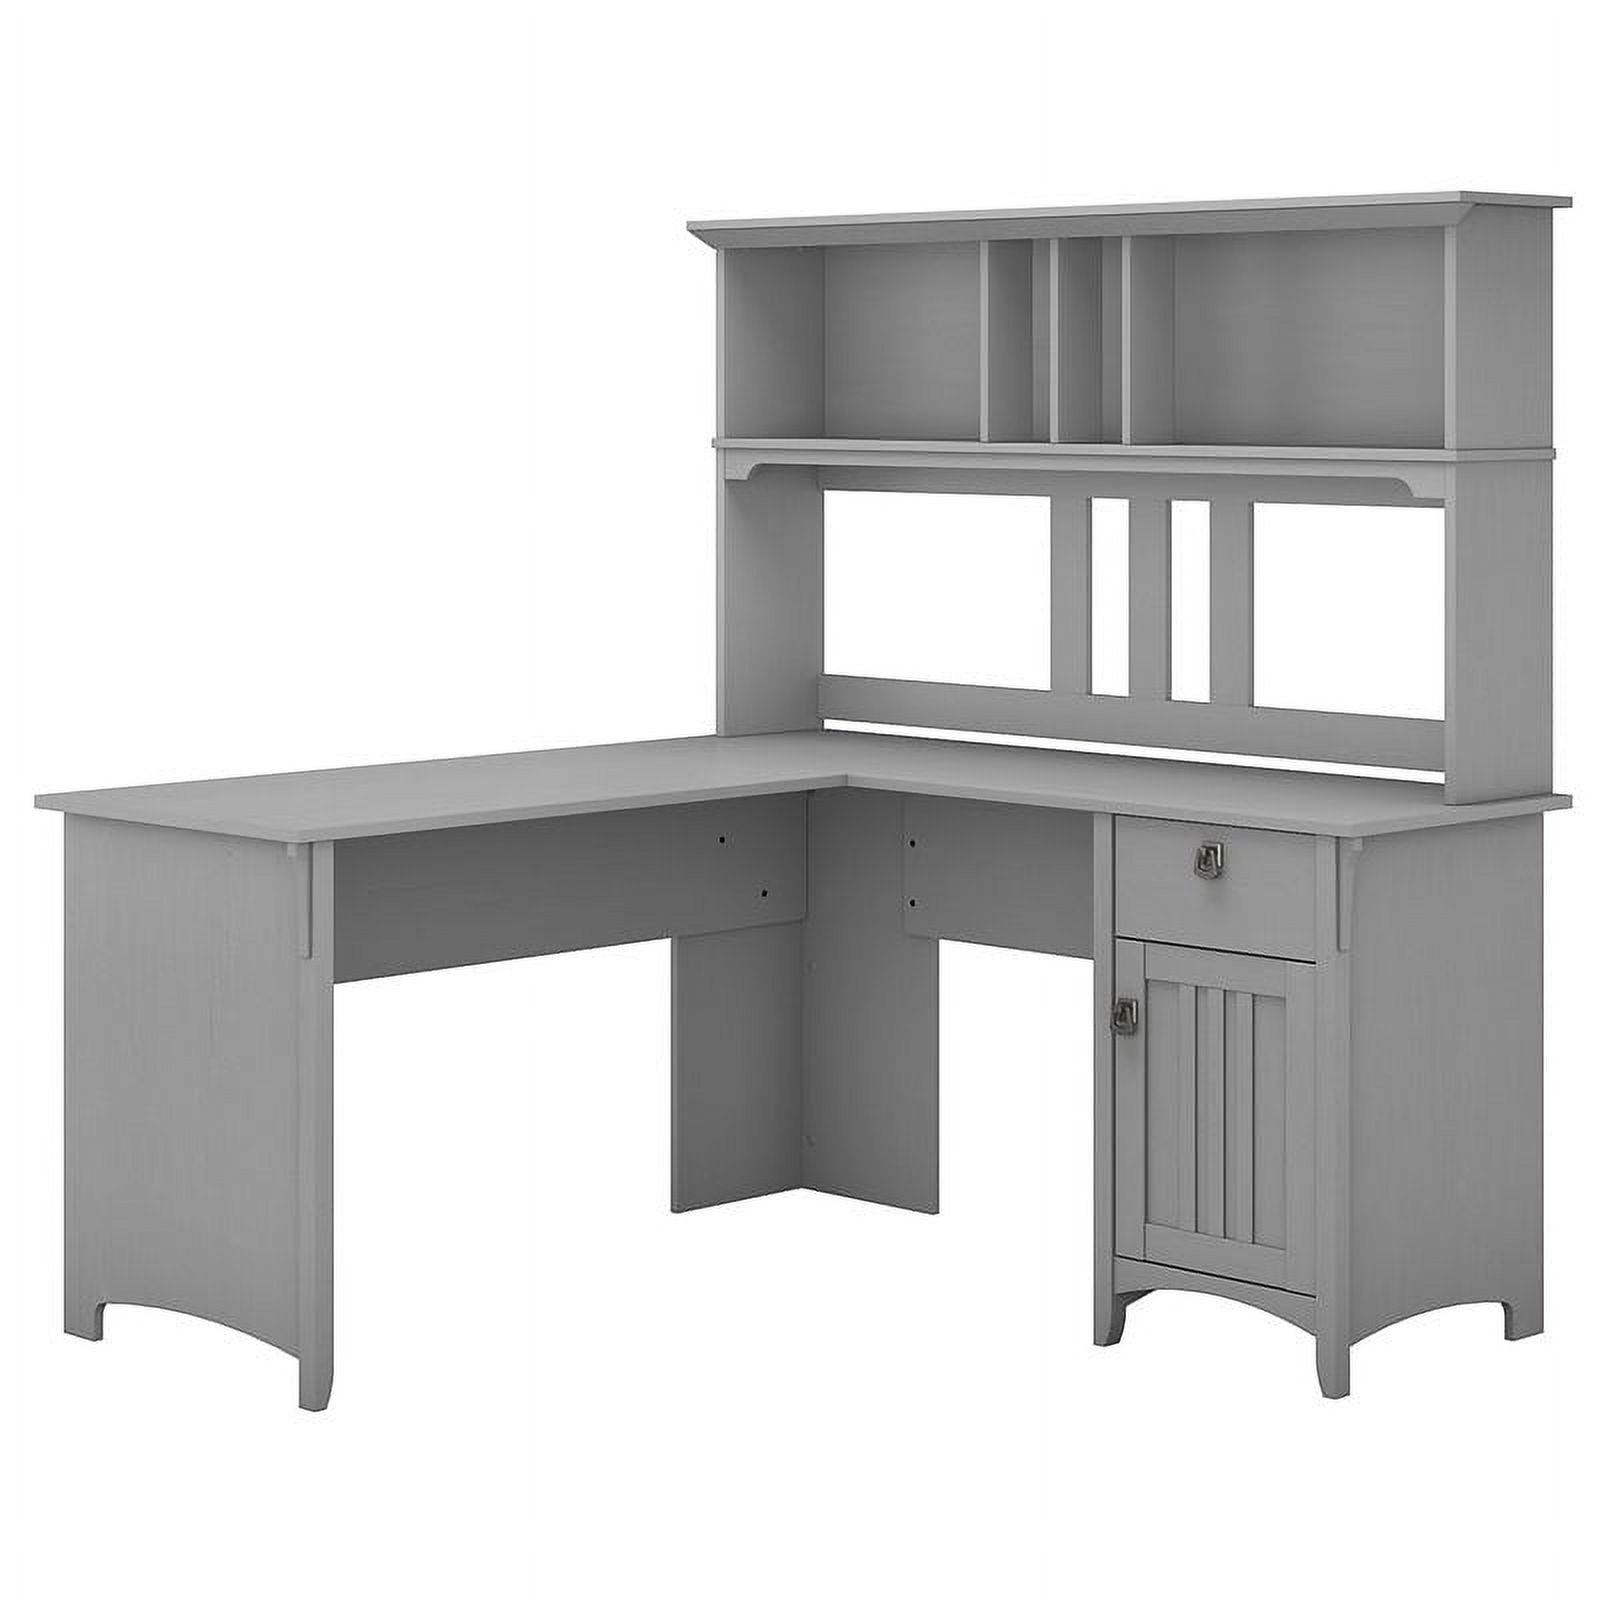 Scranton & Co Furniture Salinas 60W L Shaped Desk with Hutch in Cape Cod Gray - image 1 of 7